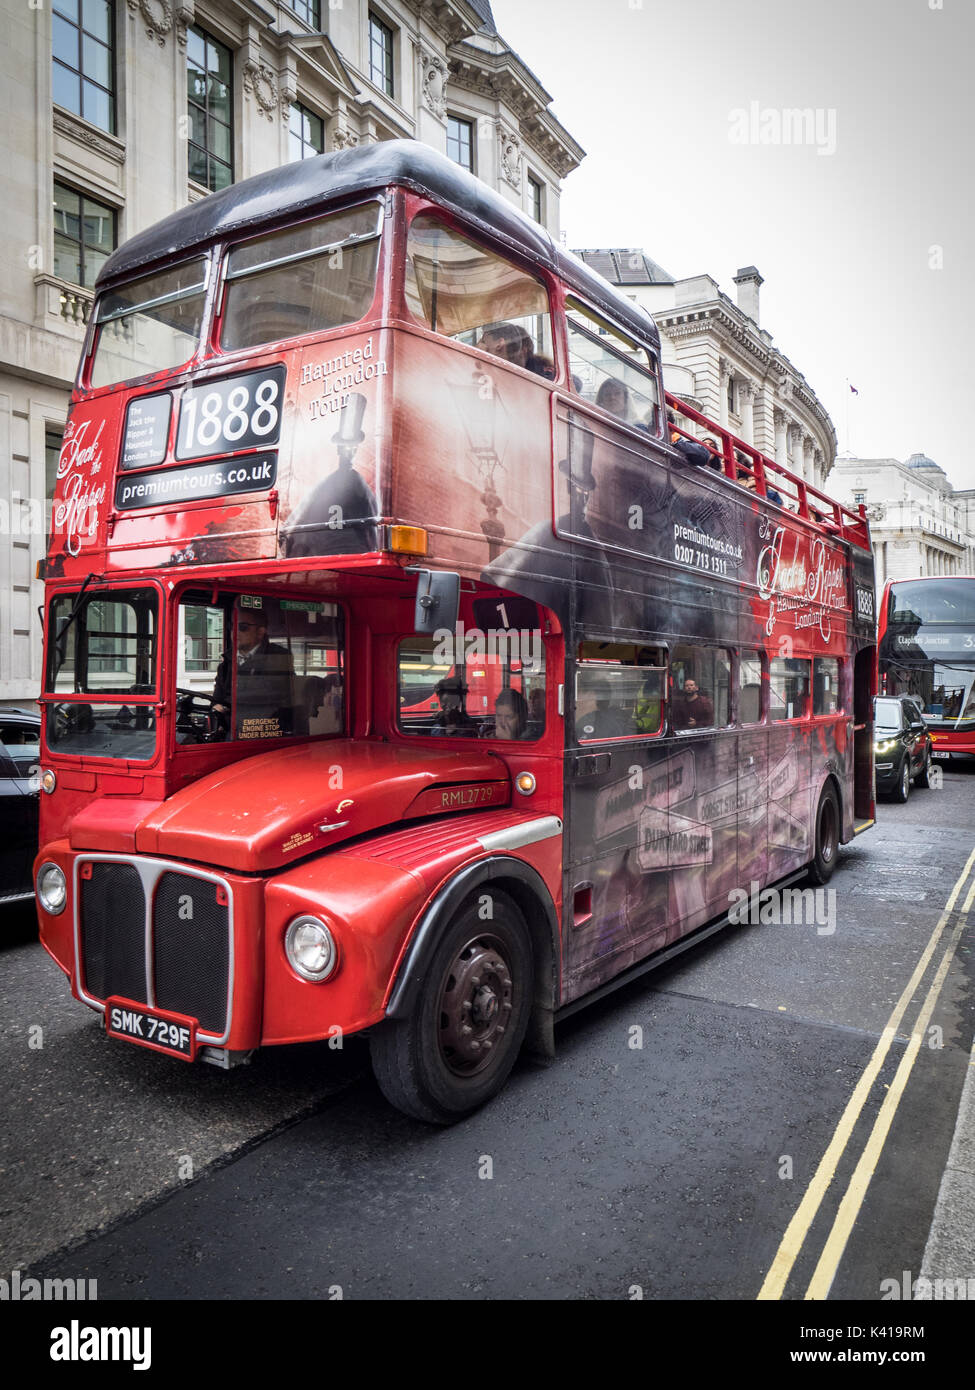 Londres Tourisme - Jack l'Eventreur ouvrir surmontée tour bus dans la ville de London financial district Banque D'Images